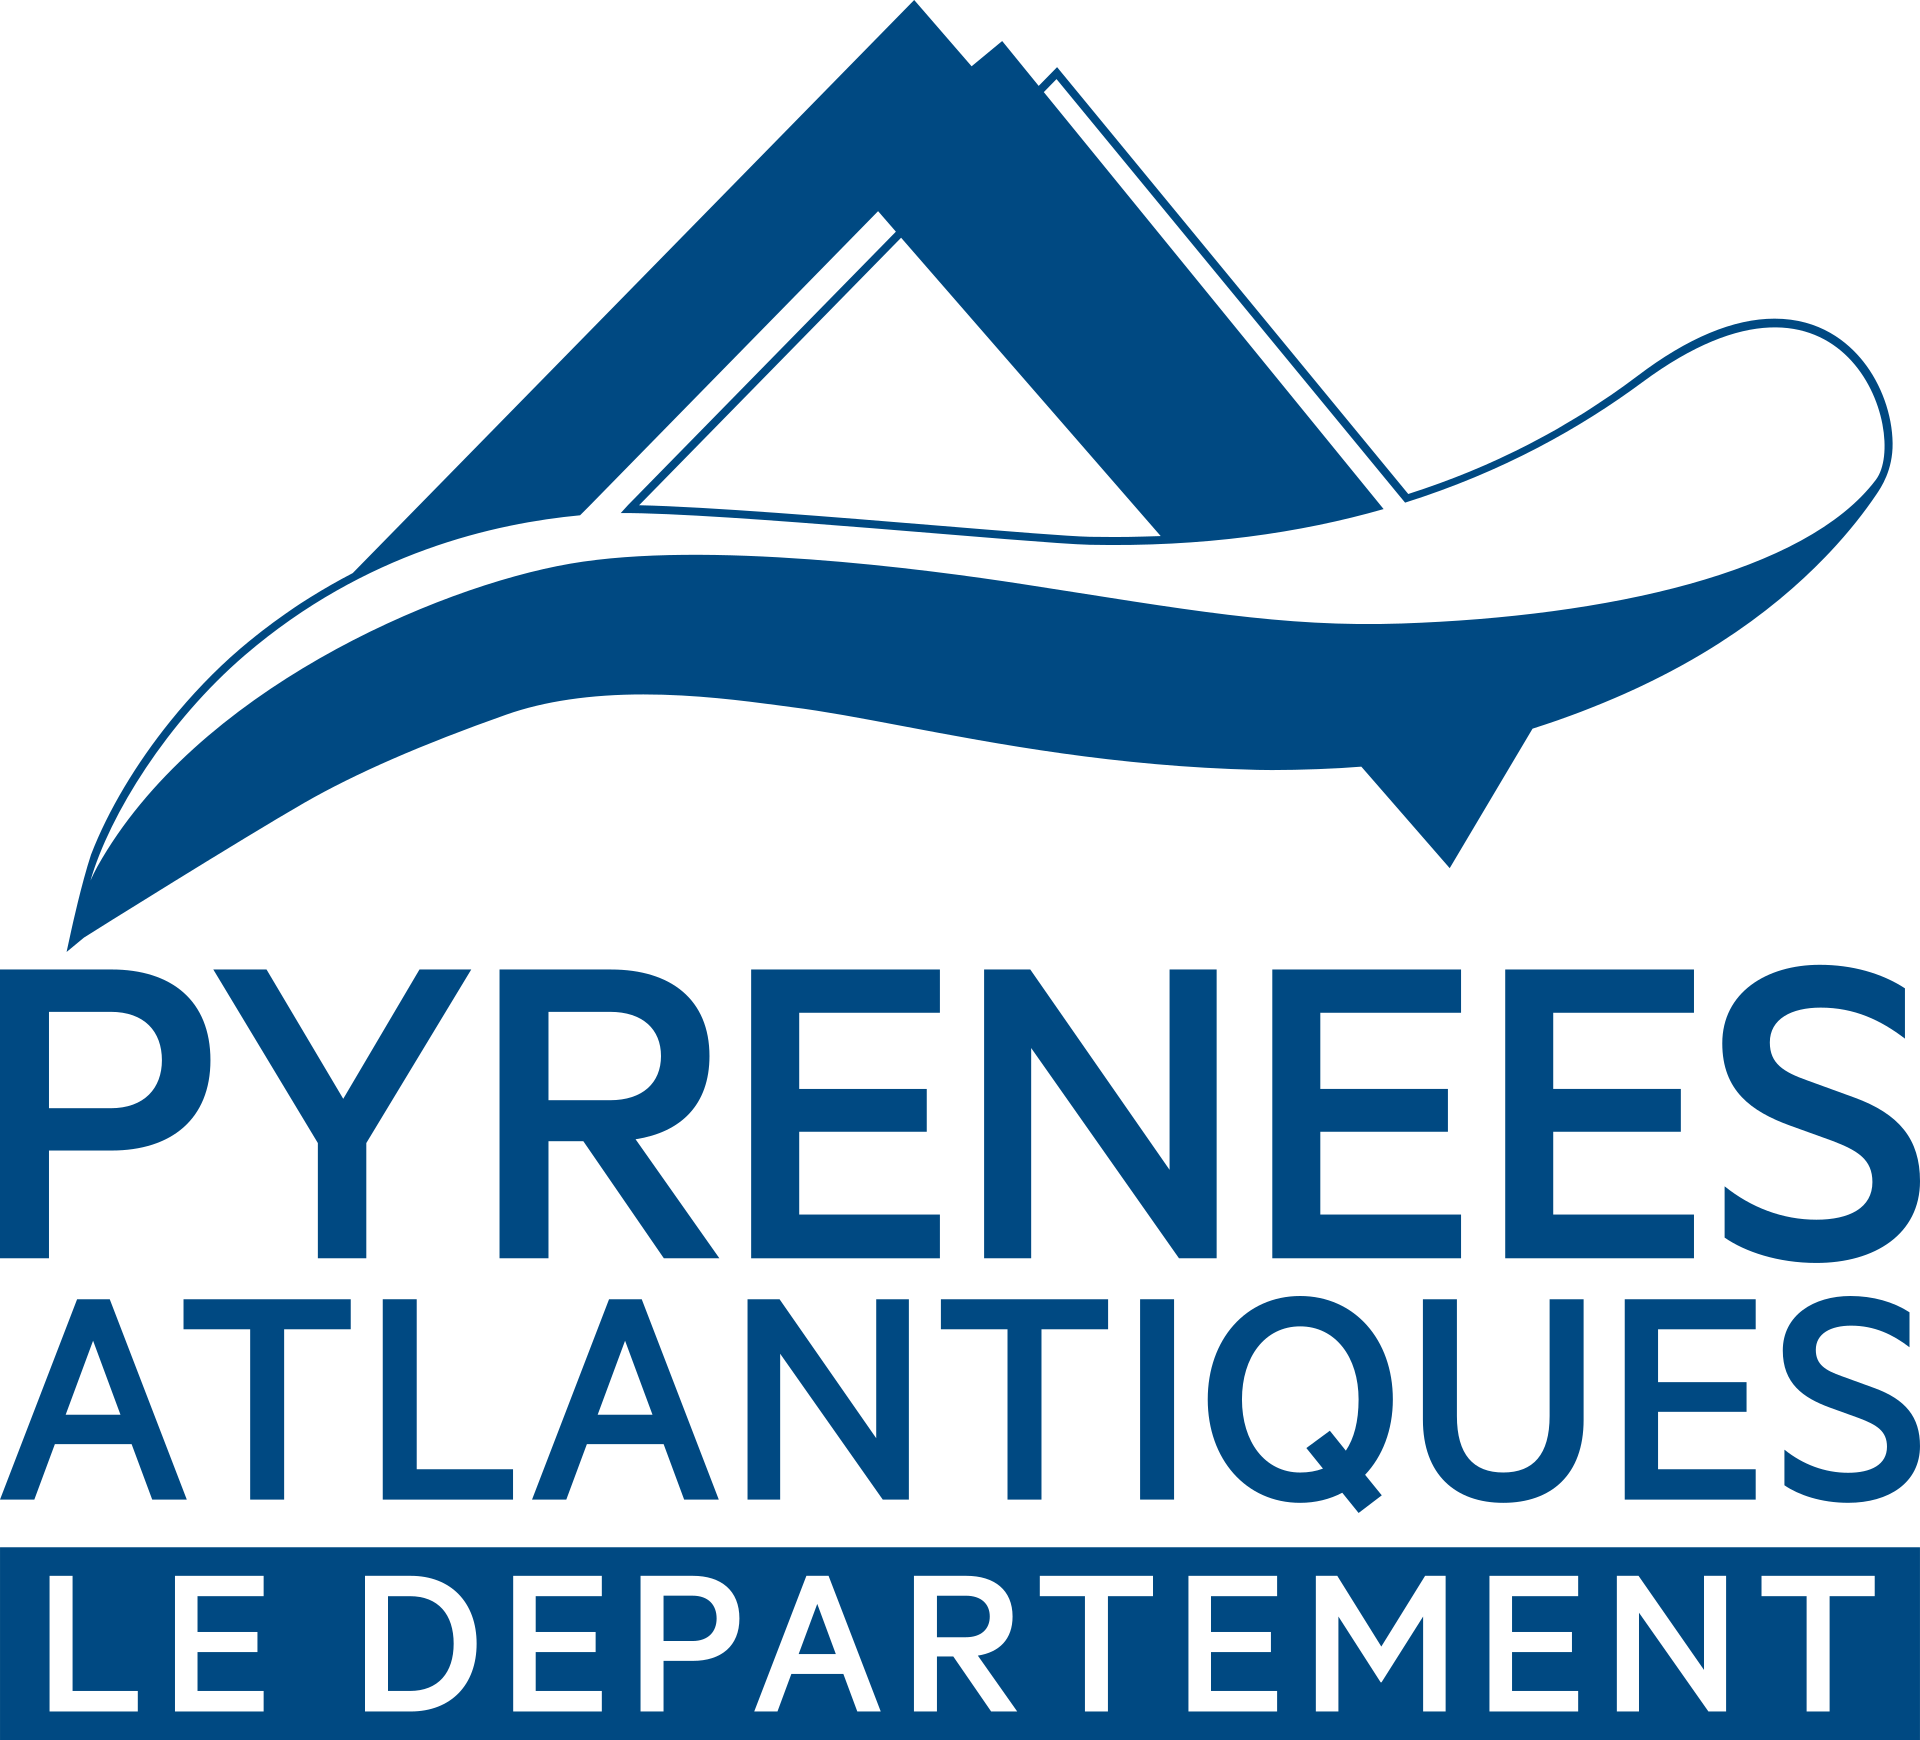 Département Pyrénées-Atlantiques